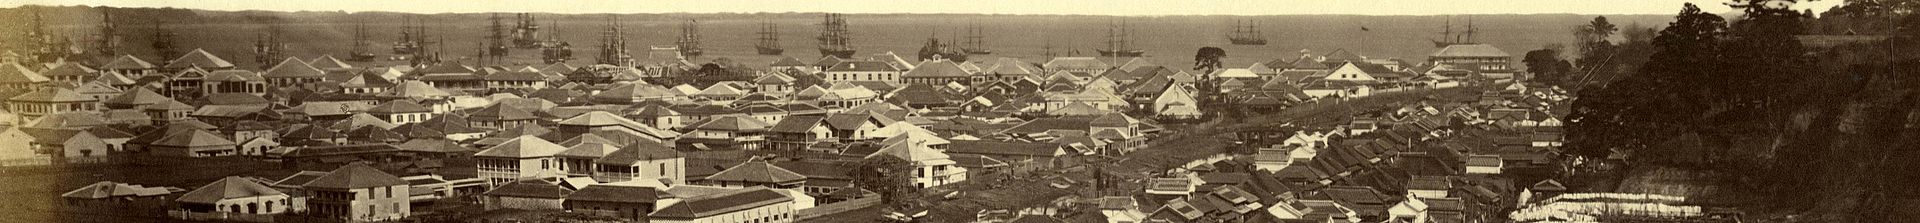 10 Панорама Йокогамы 1860-е.jpg